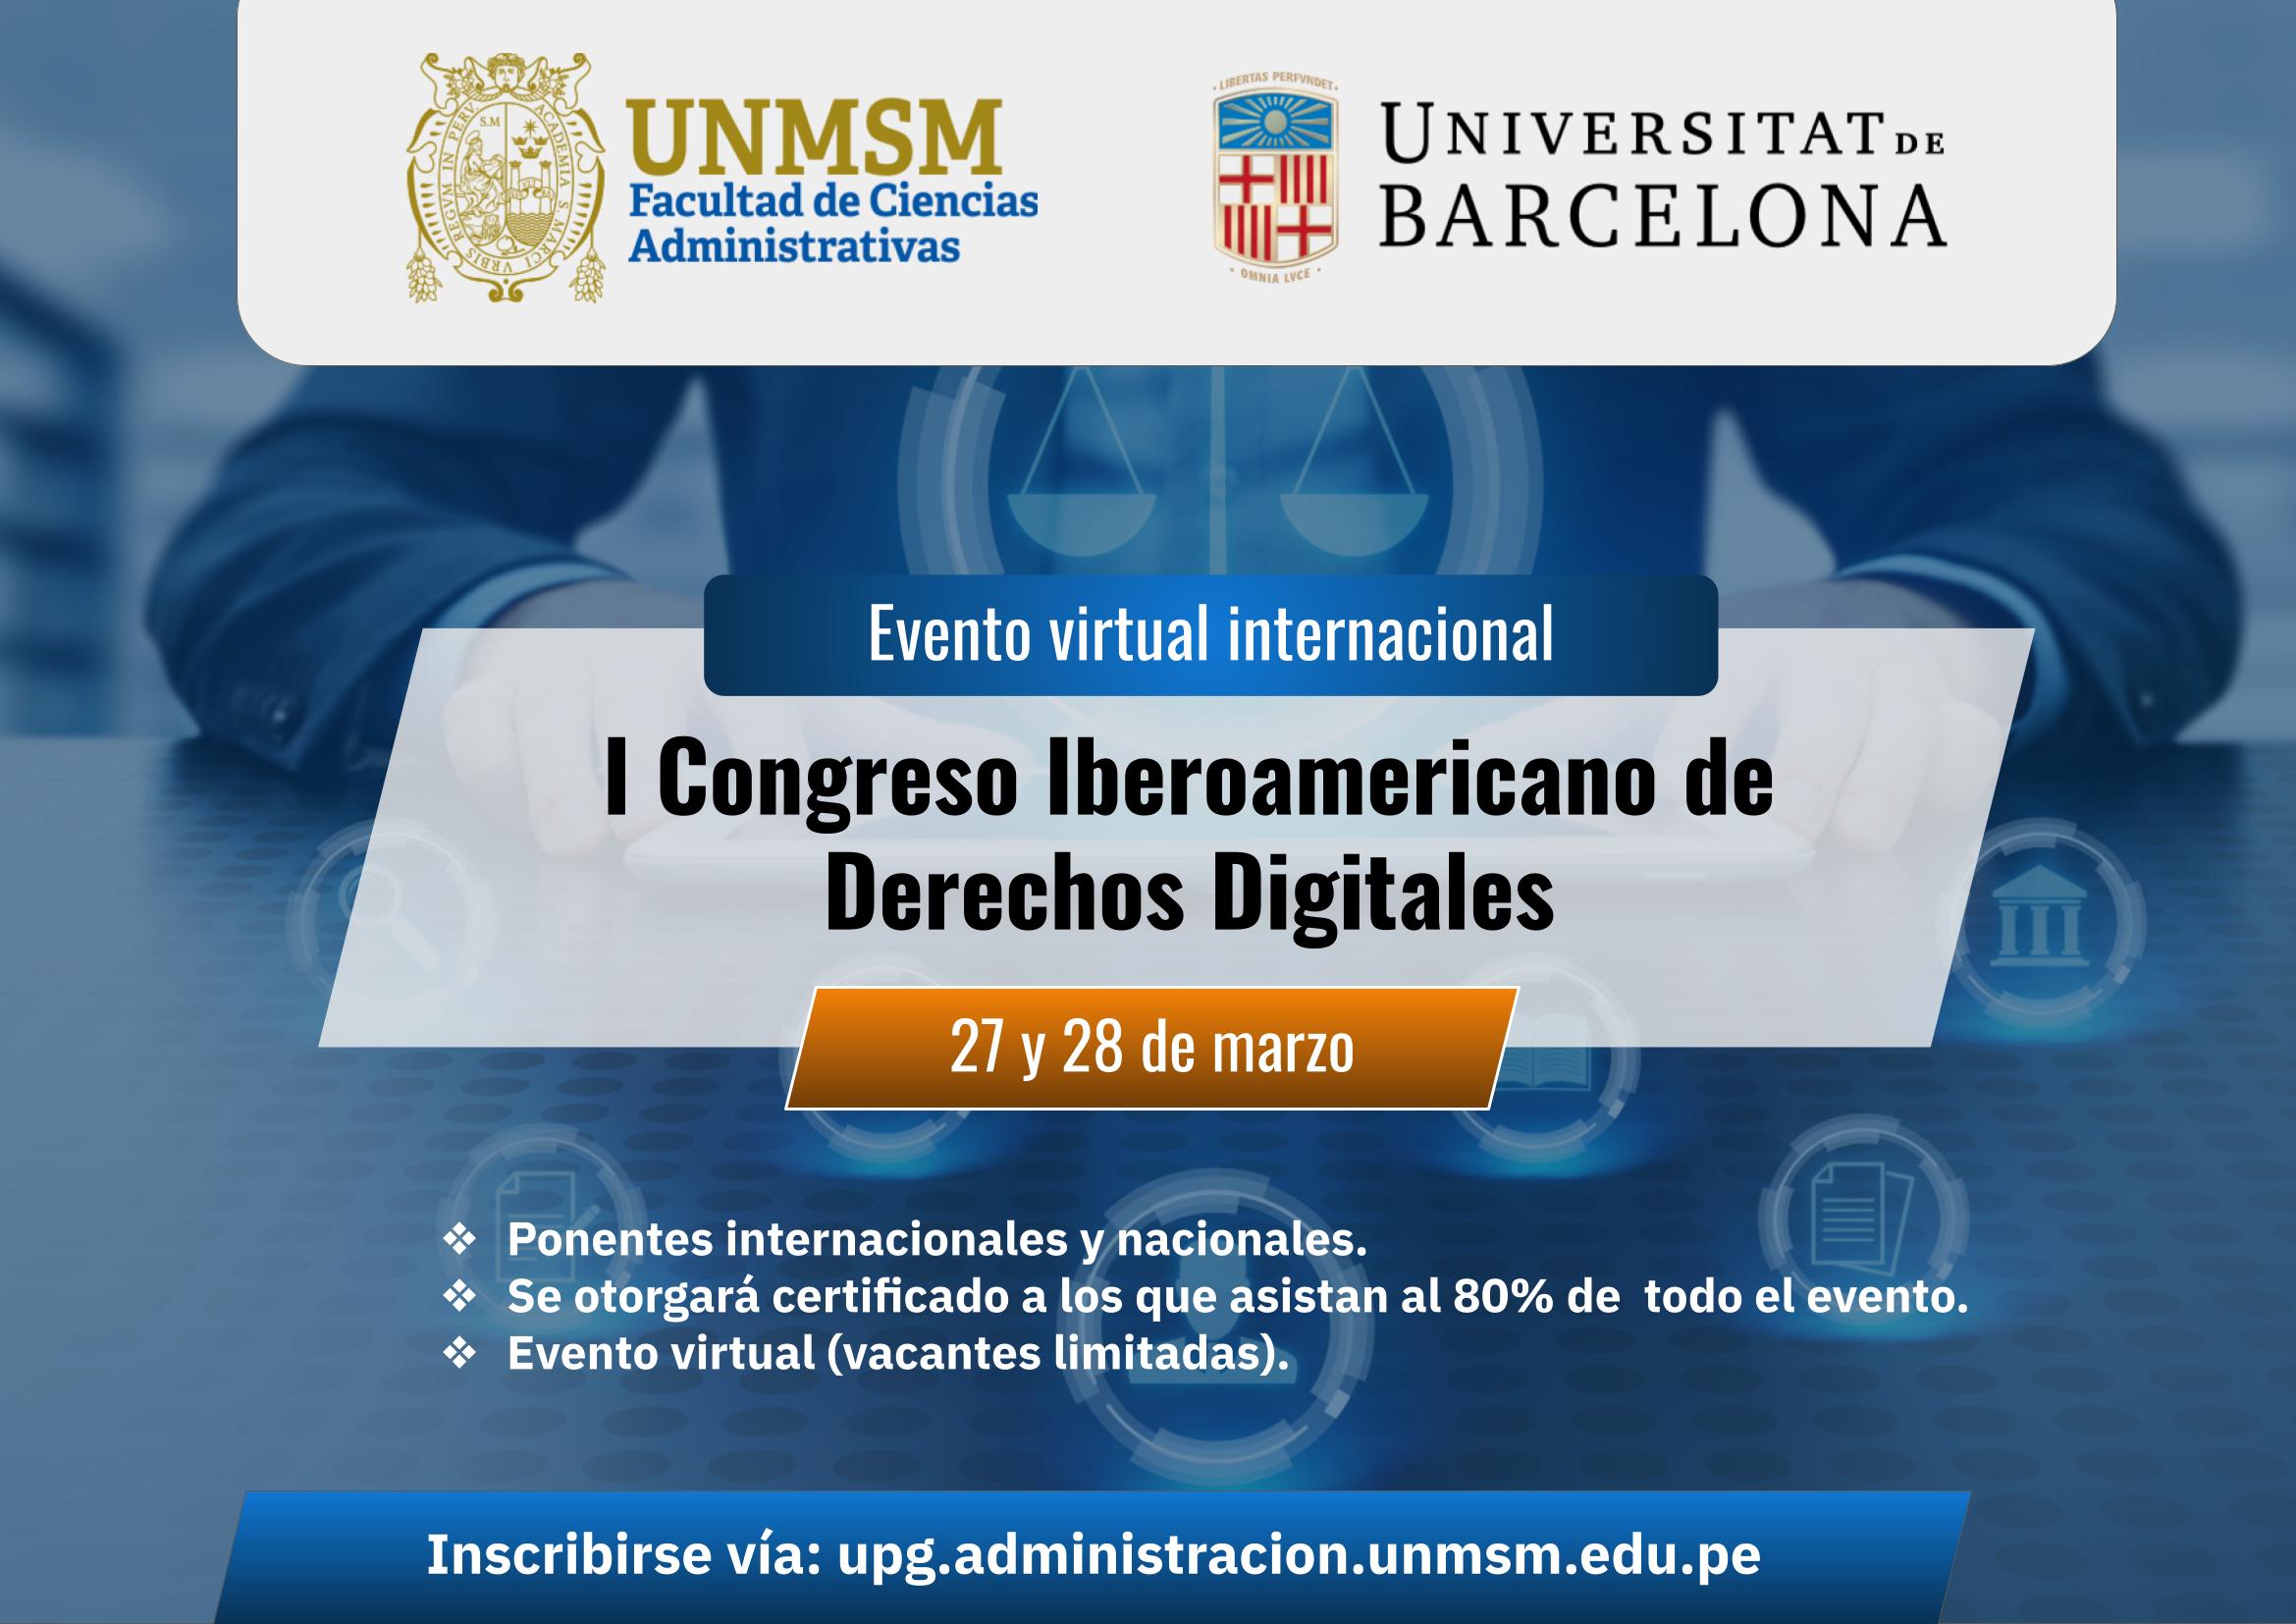 Ponente en el I Congreso Iberoamericano de Derechos Digitales